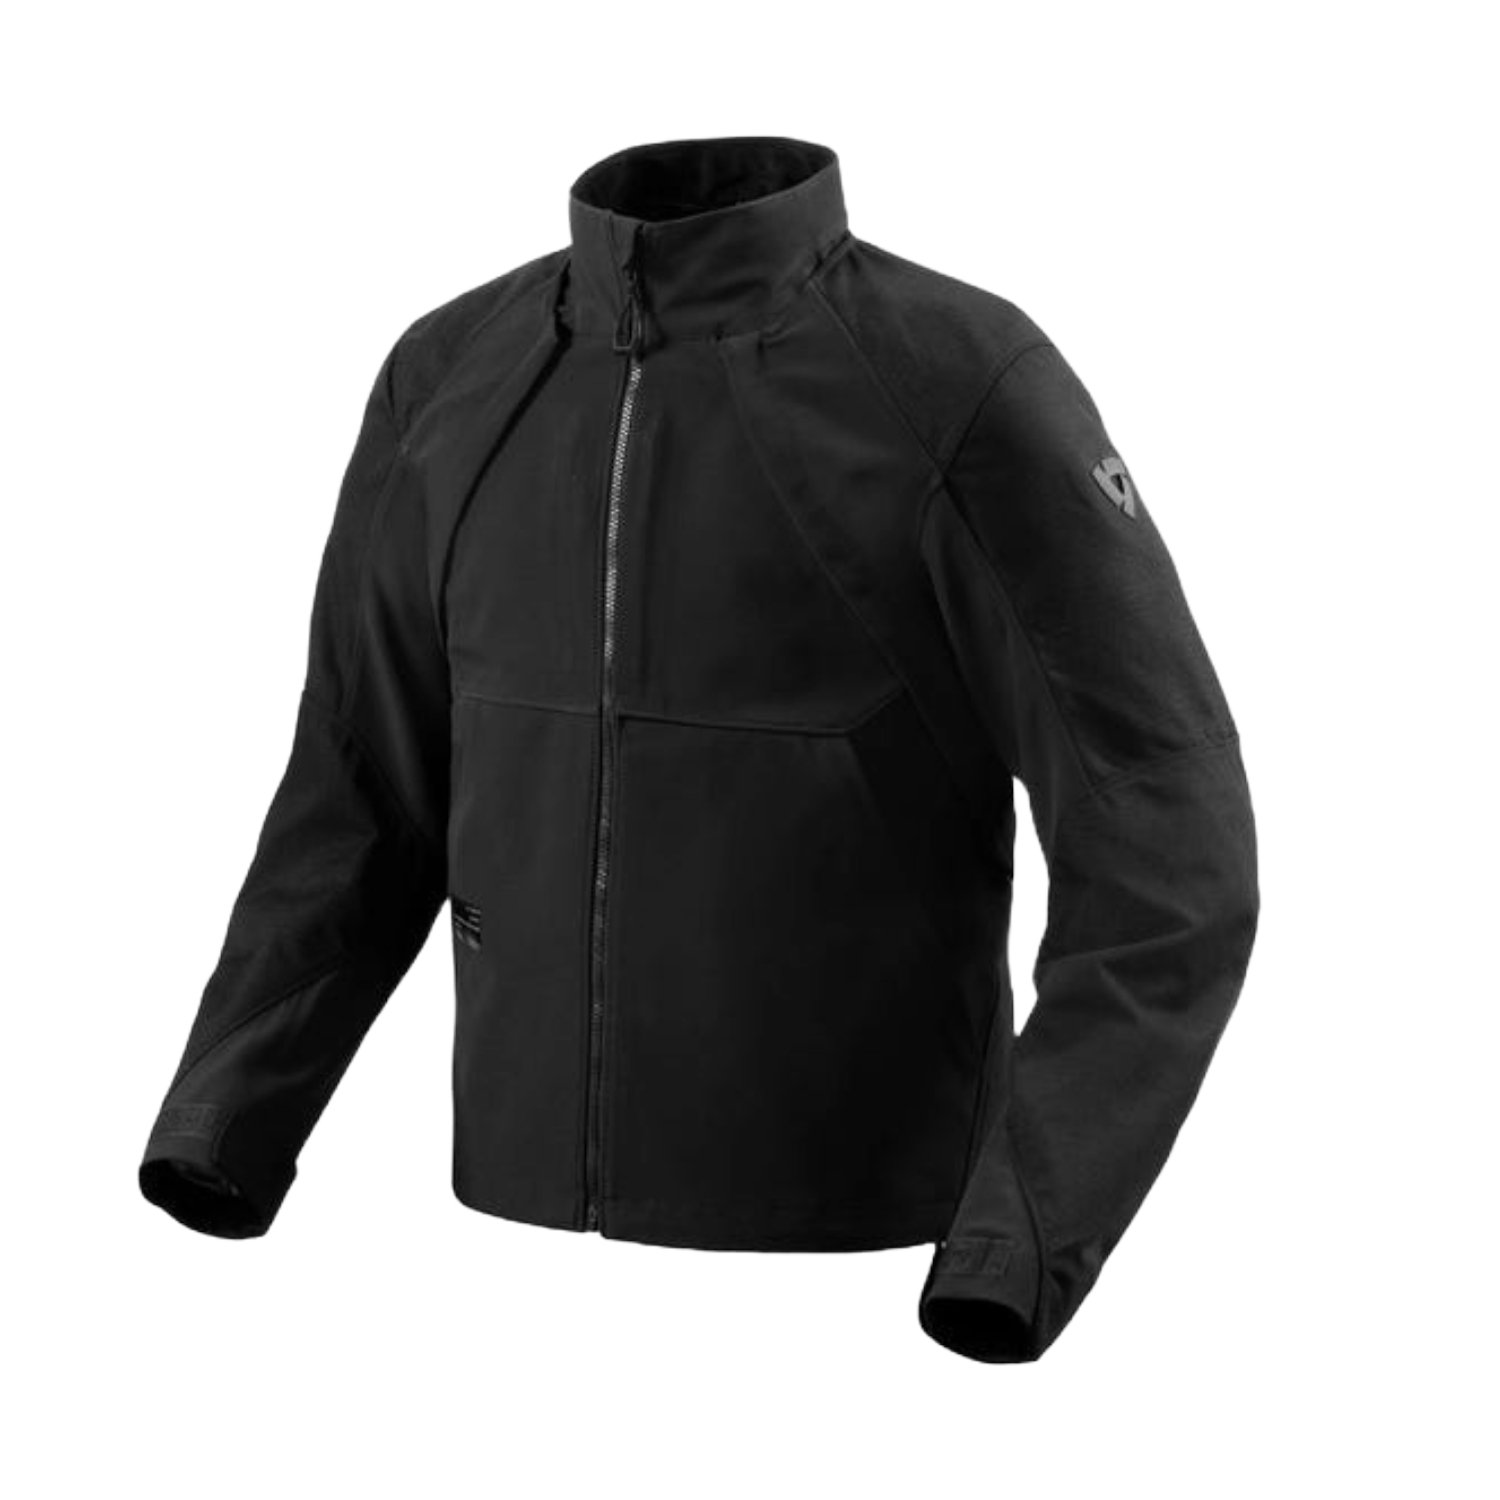 Image of REV'IT! Continent Wind Breaker Jacket Black Size XL EN